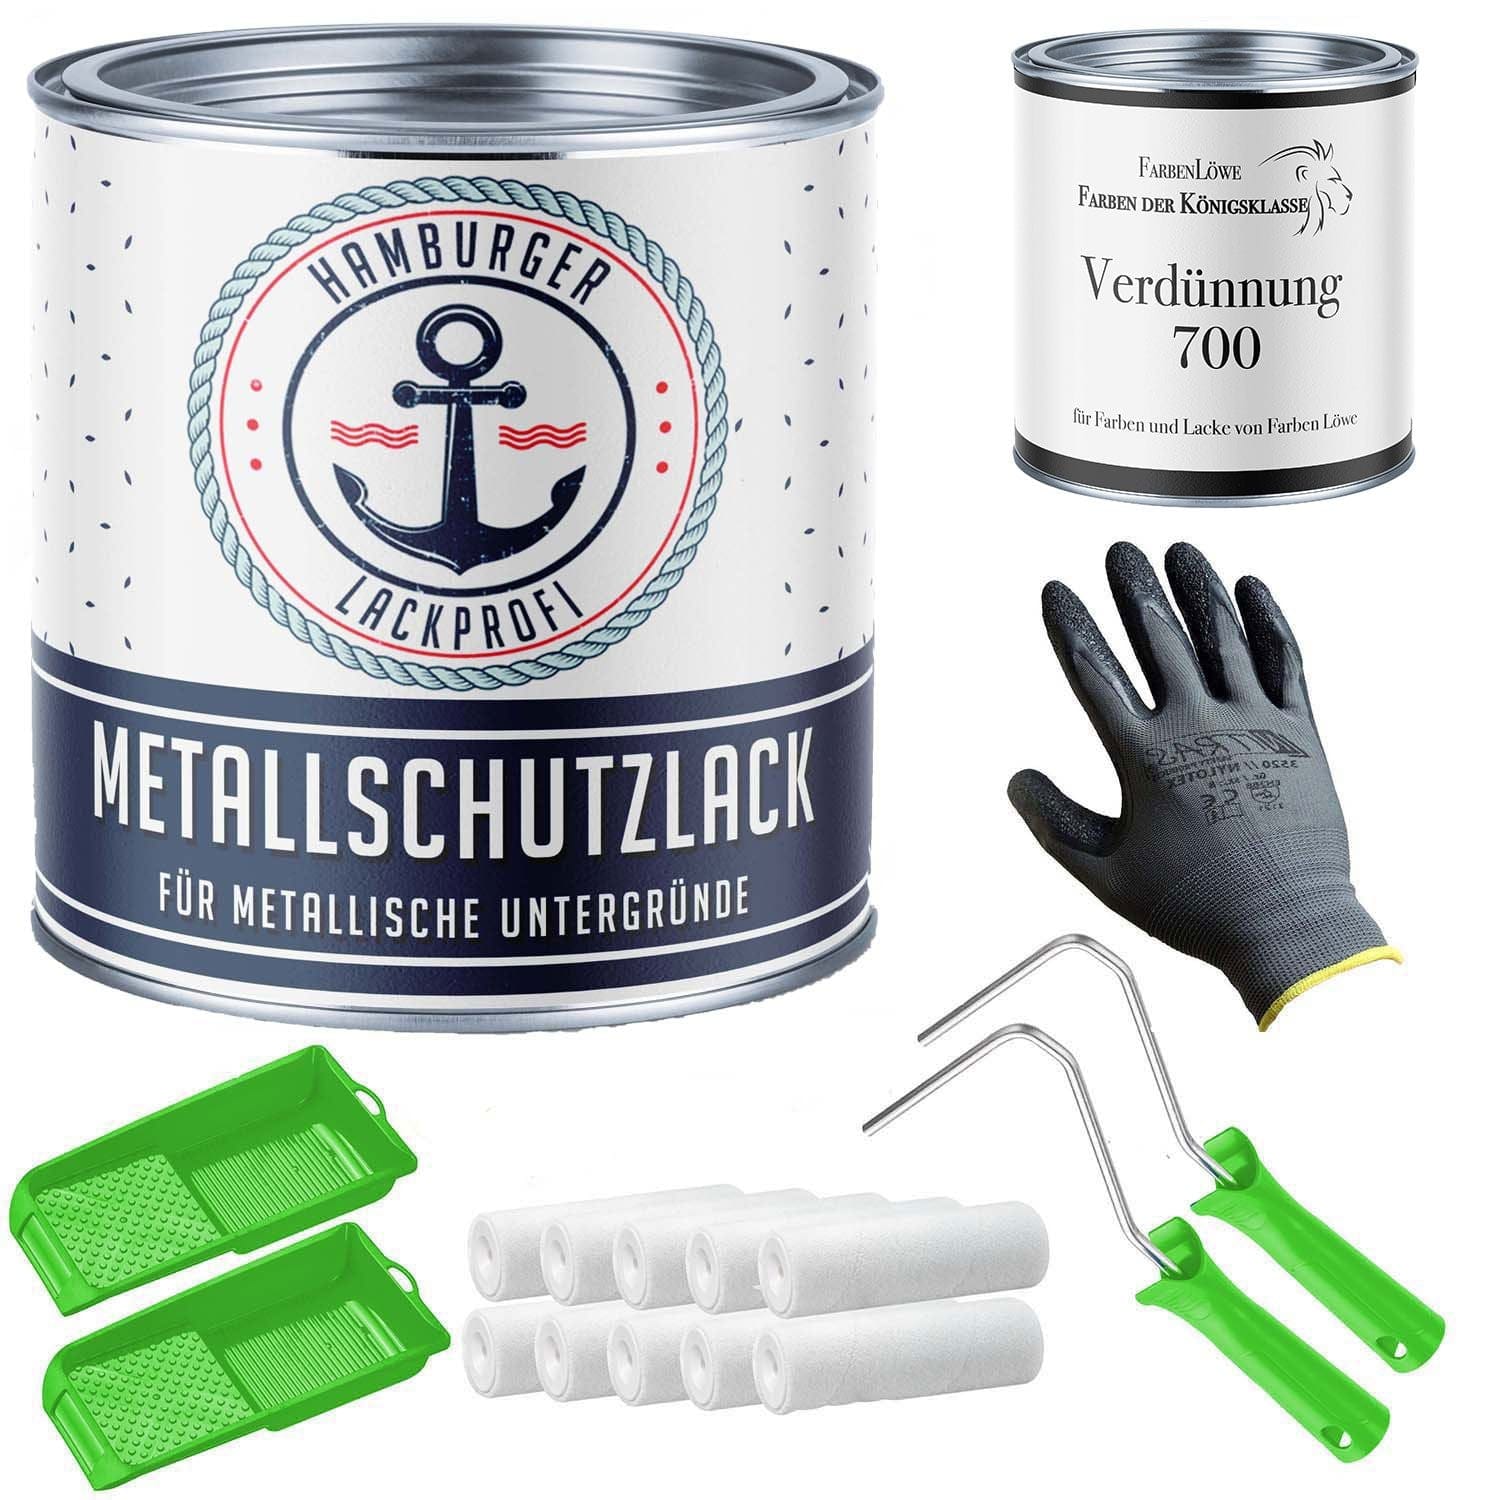 FARBENLÖWE Lacke & Beschichtungen Hamburger Lack-Profi Metallschutzlack in Grüngrau RAL 7009 mit Lackierset (X300) & Verdünnung (1 L) - 30% Sparangebot